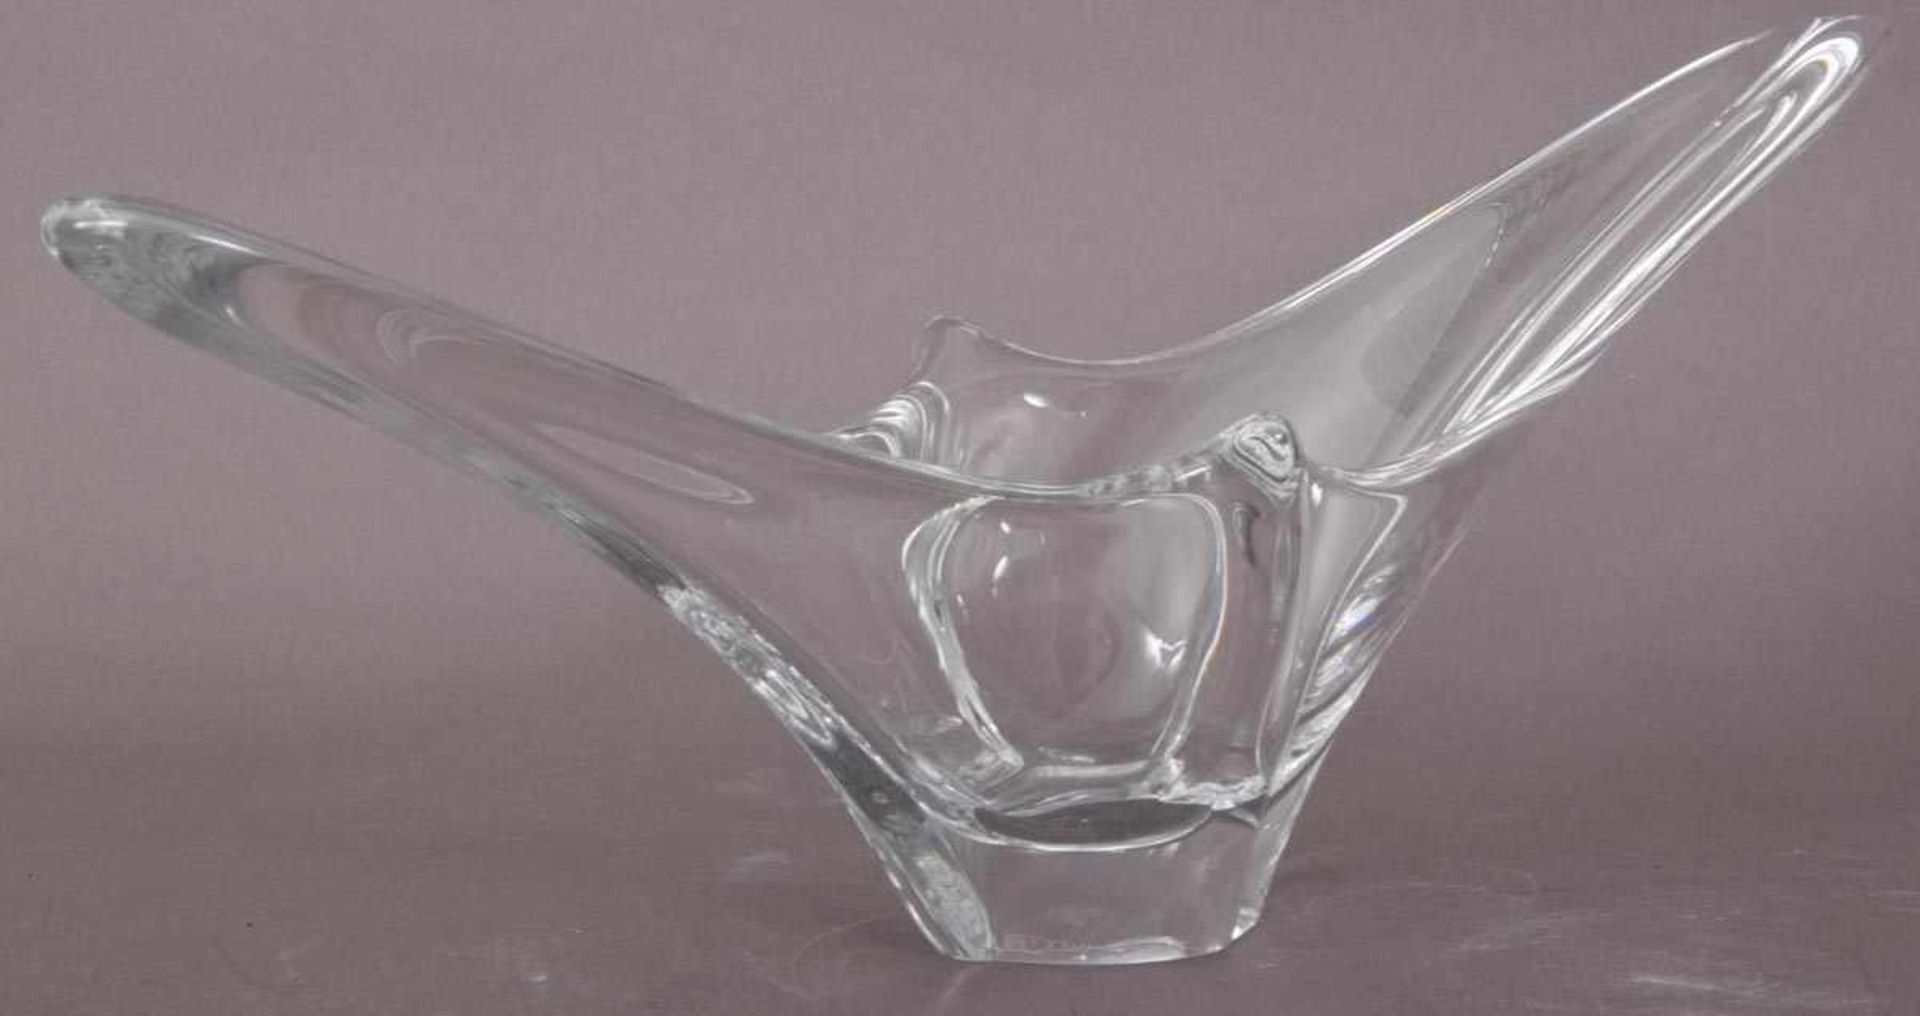 Längsovale, dickwandige Glasschale, seitlich signiert "Daum - France" Ca. 21 x 60 x 14,5 cm. - Bild 2 aus 4